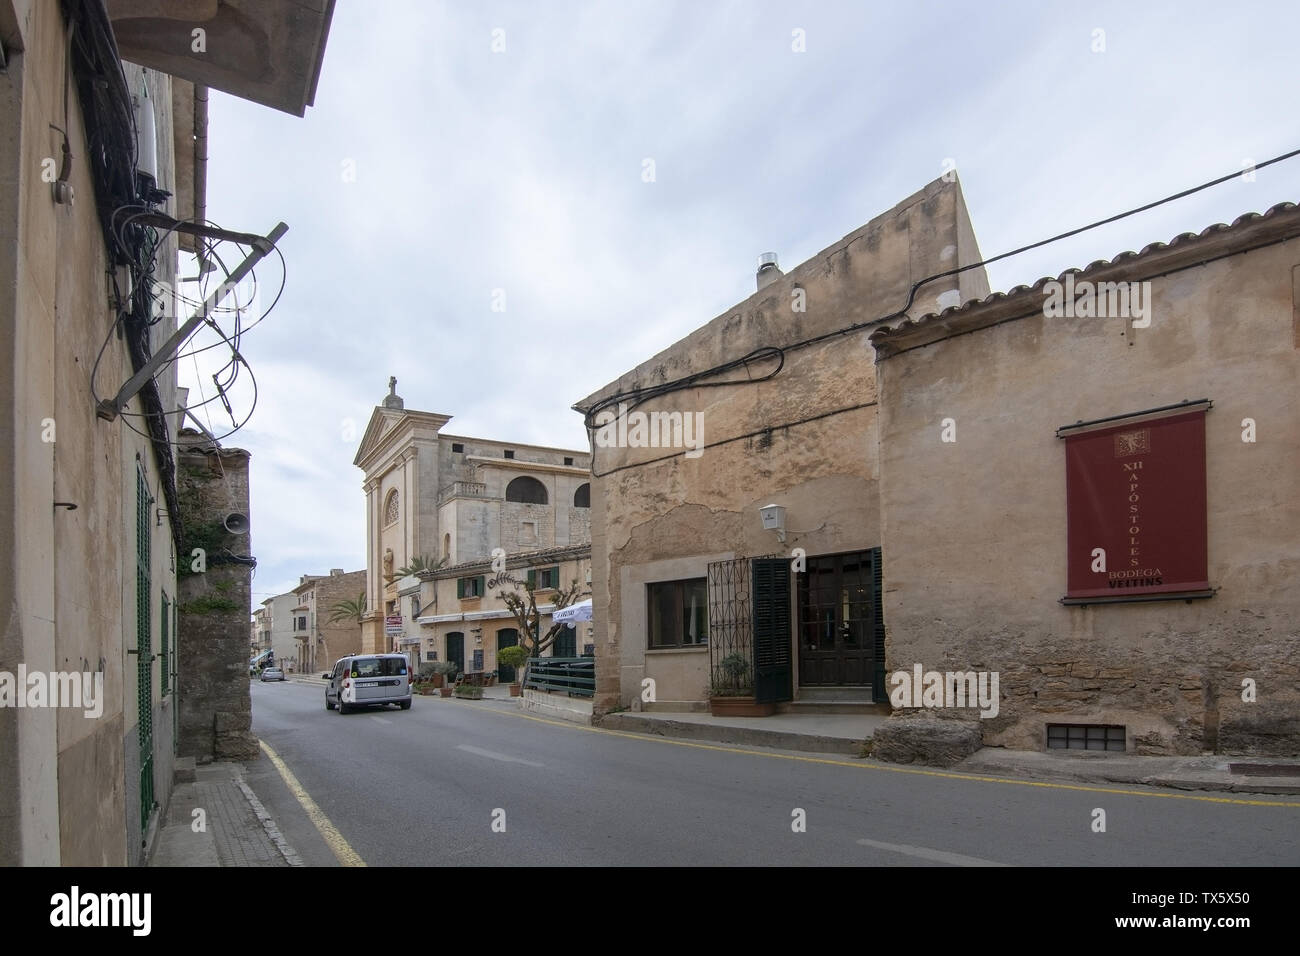 SES SALINES, Mallorca, España - 15 de abril de 2019: vista de la calle en el centro de pueblo en un día nublado en el comienzo de la temporada turística. Foto de stock